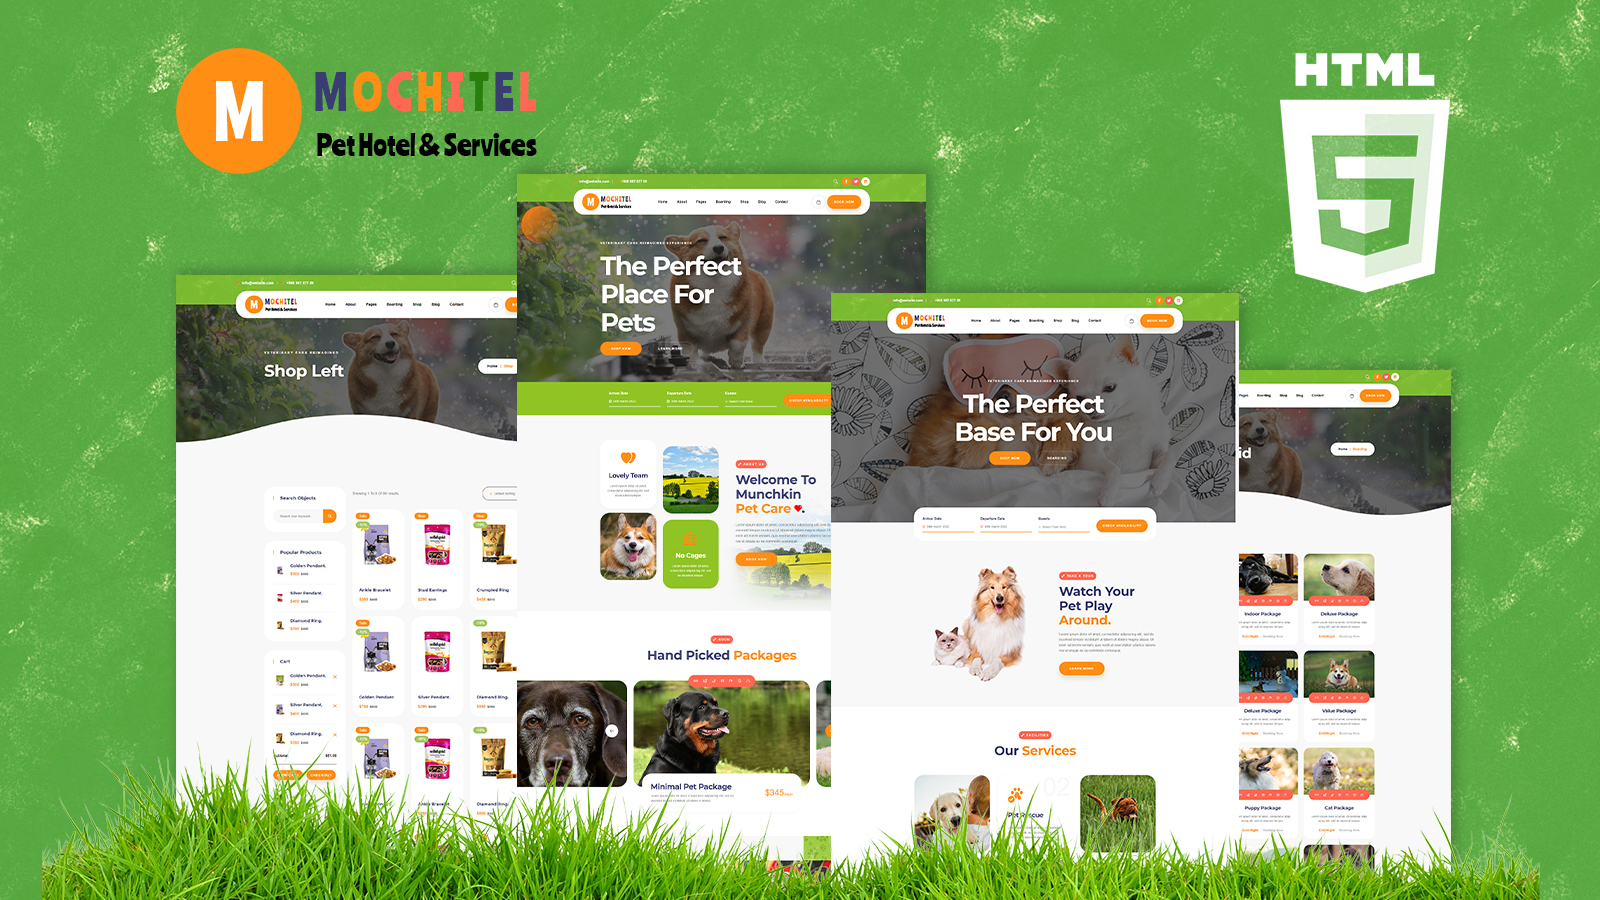 Motchitel Pet Care Shop And Services HTML5 Template